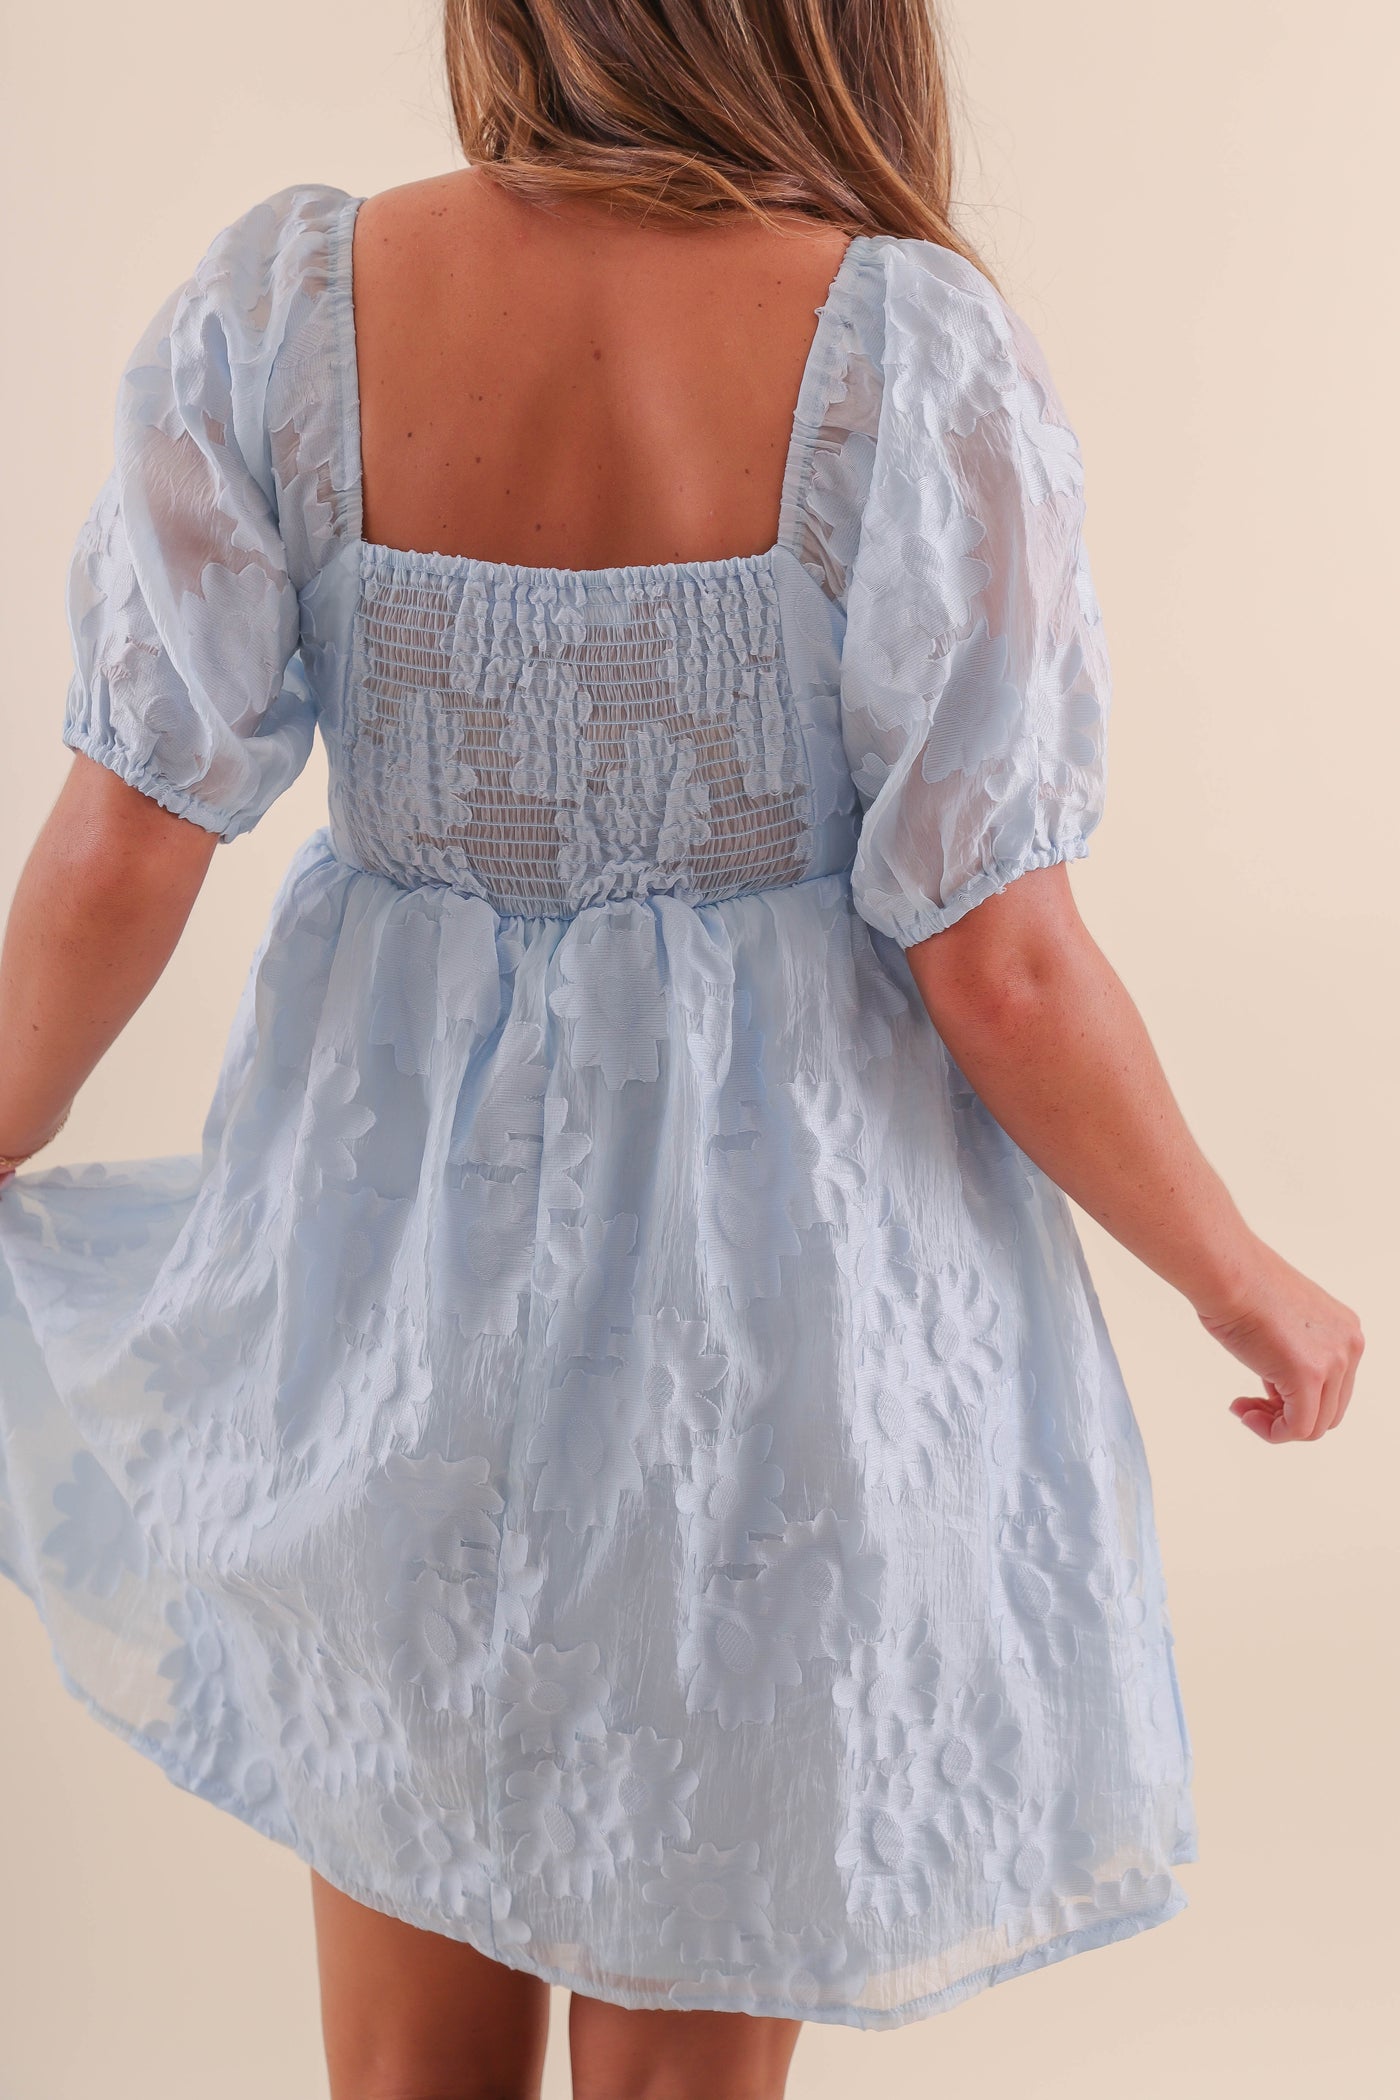 Blue Floral Applique Dress- Blue Lace Midi Dress- Women's Wedding Guest Dress